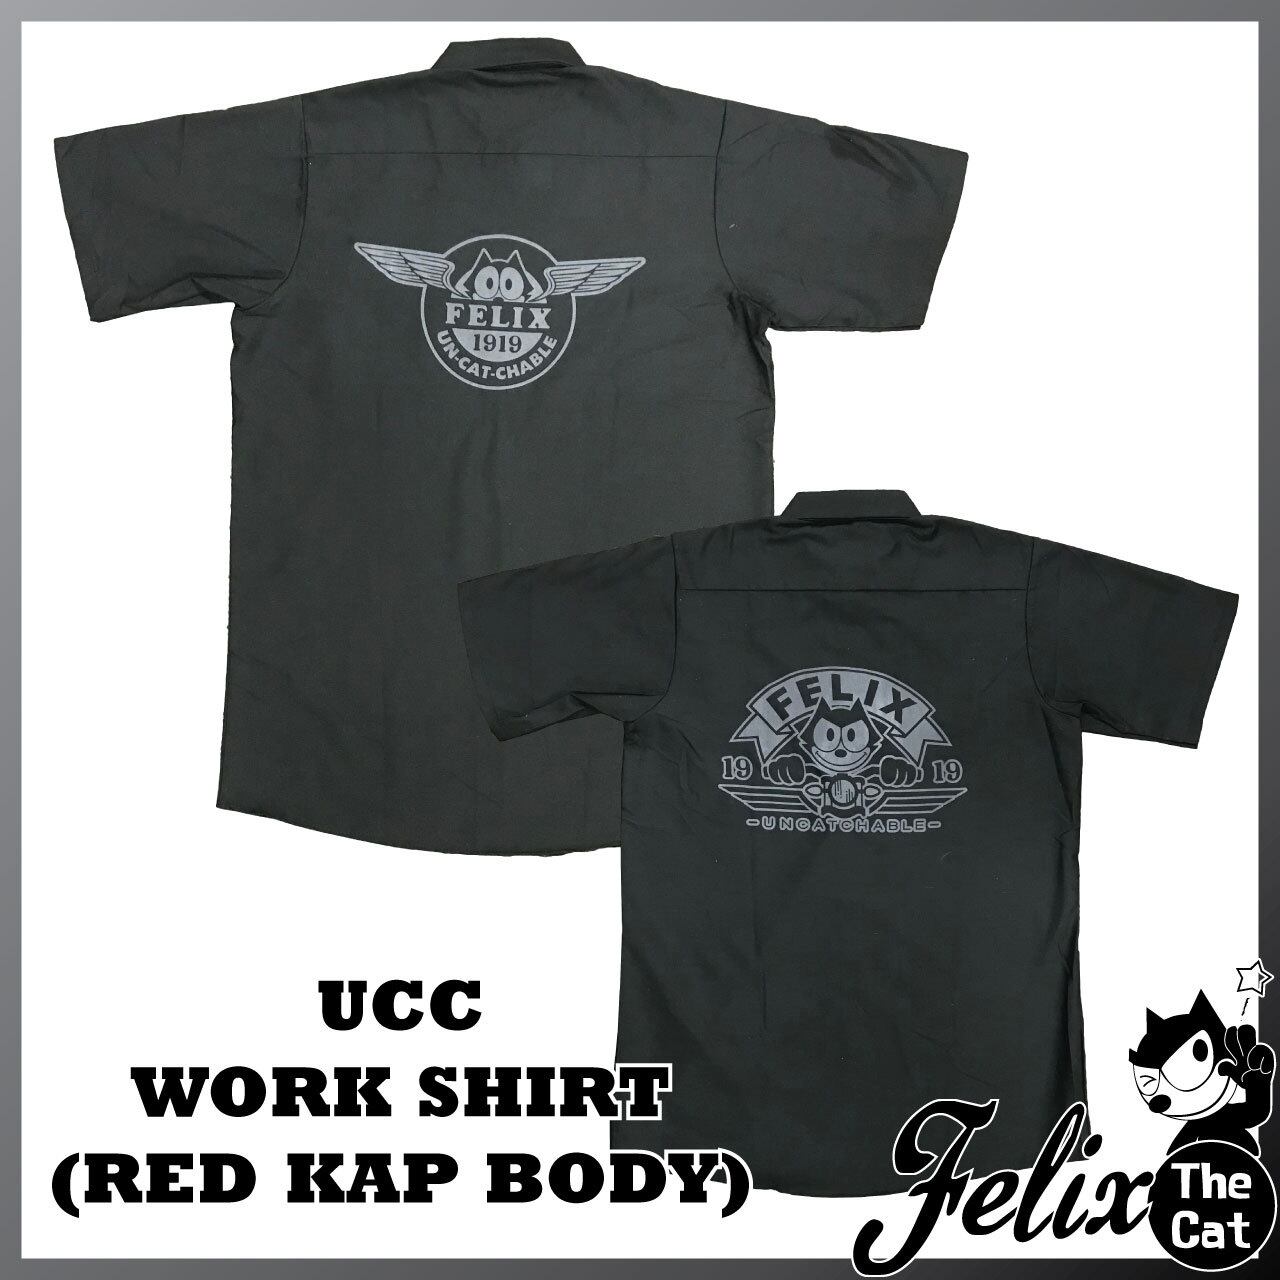 [FELIX]フィリックス・ザ・キャット UCCワークシャツ・ブラック・RED KAP(レッドキャップ)